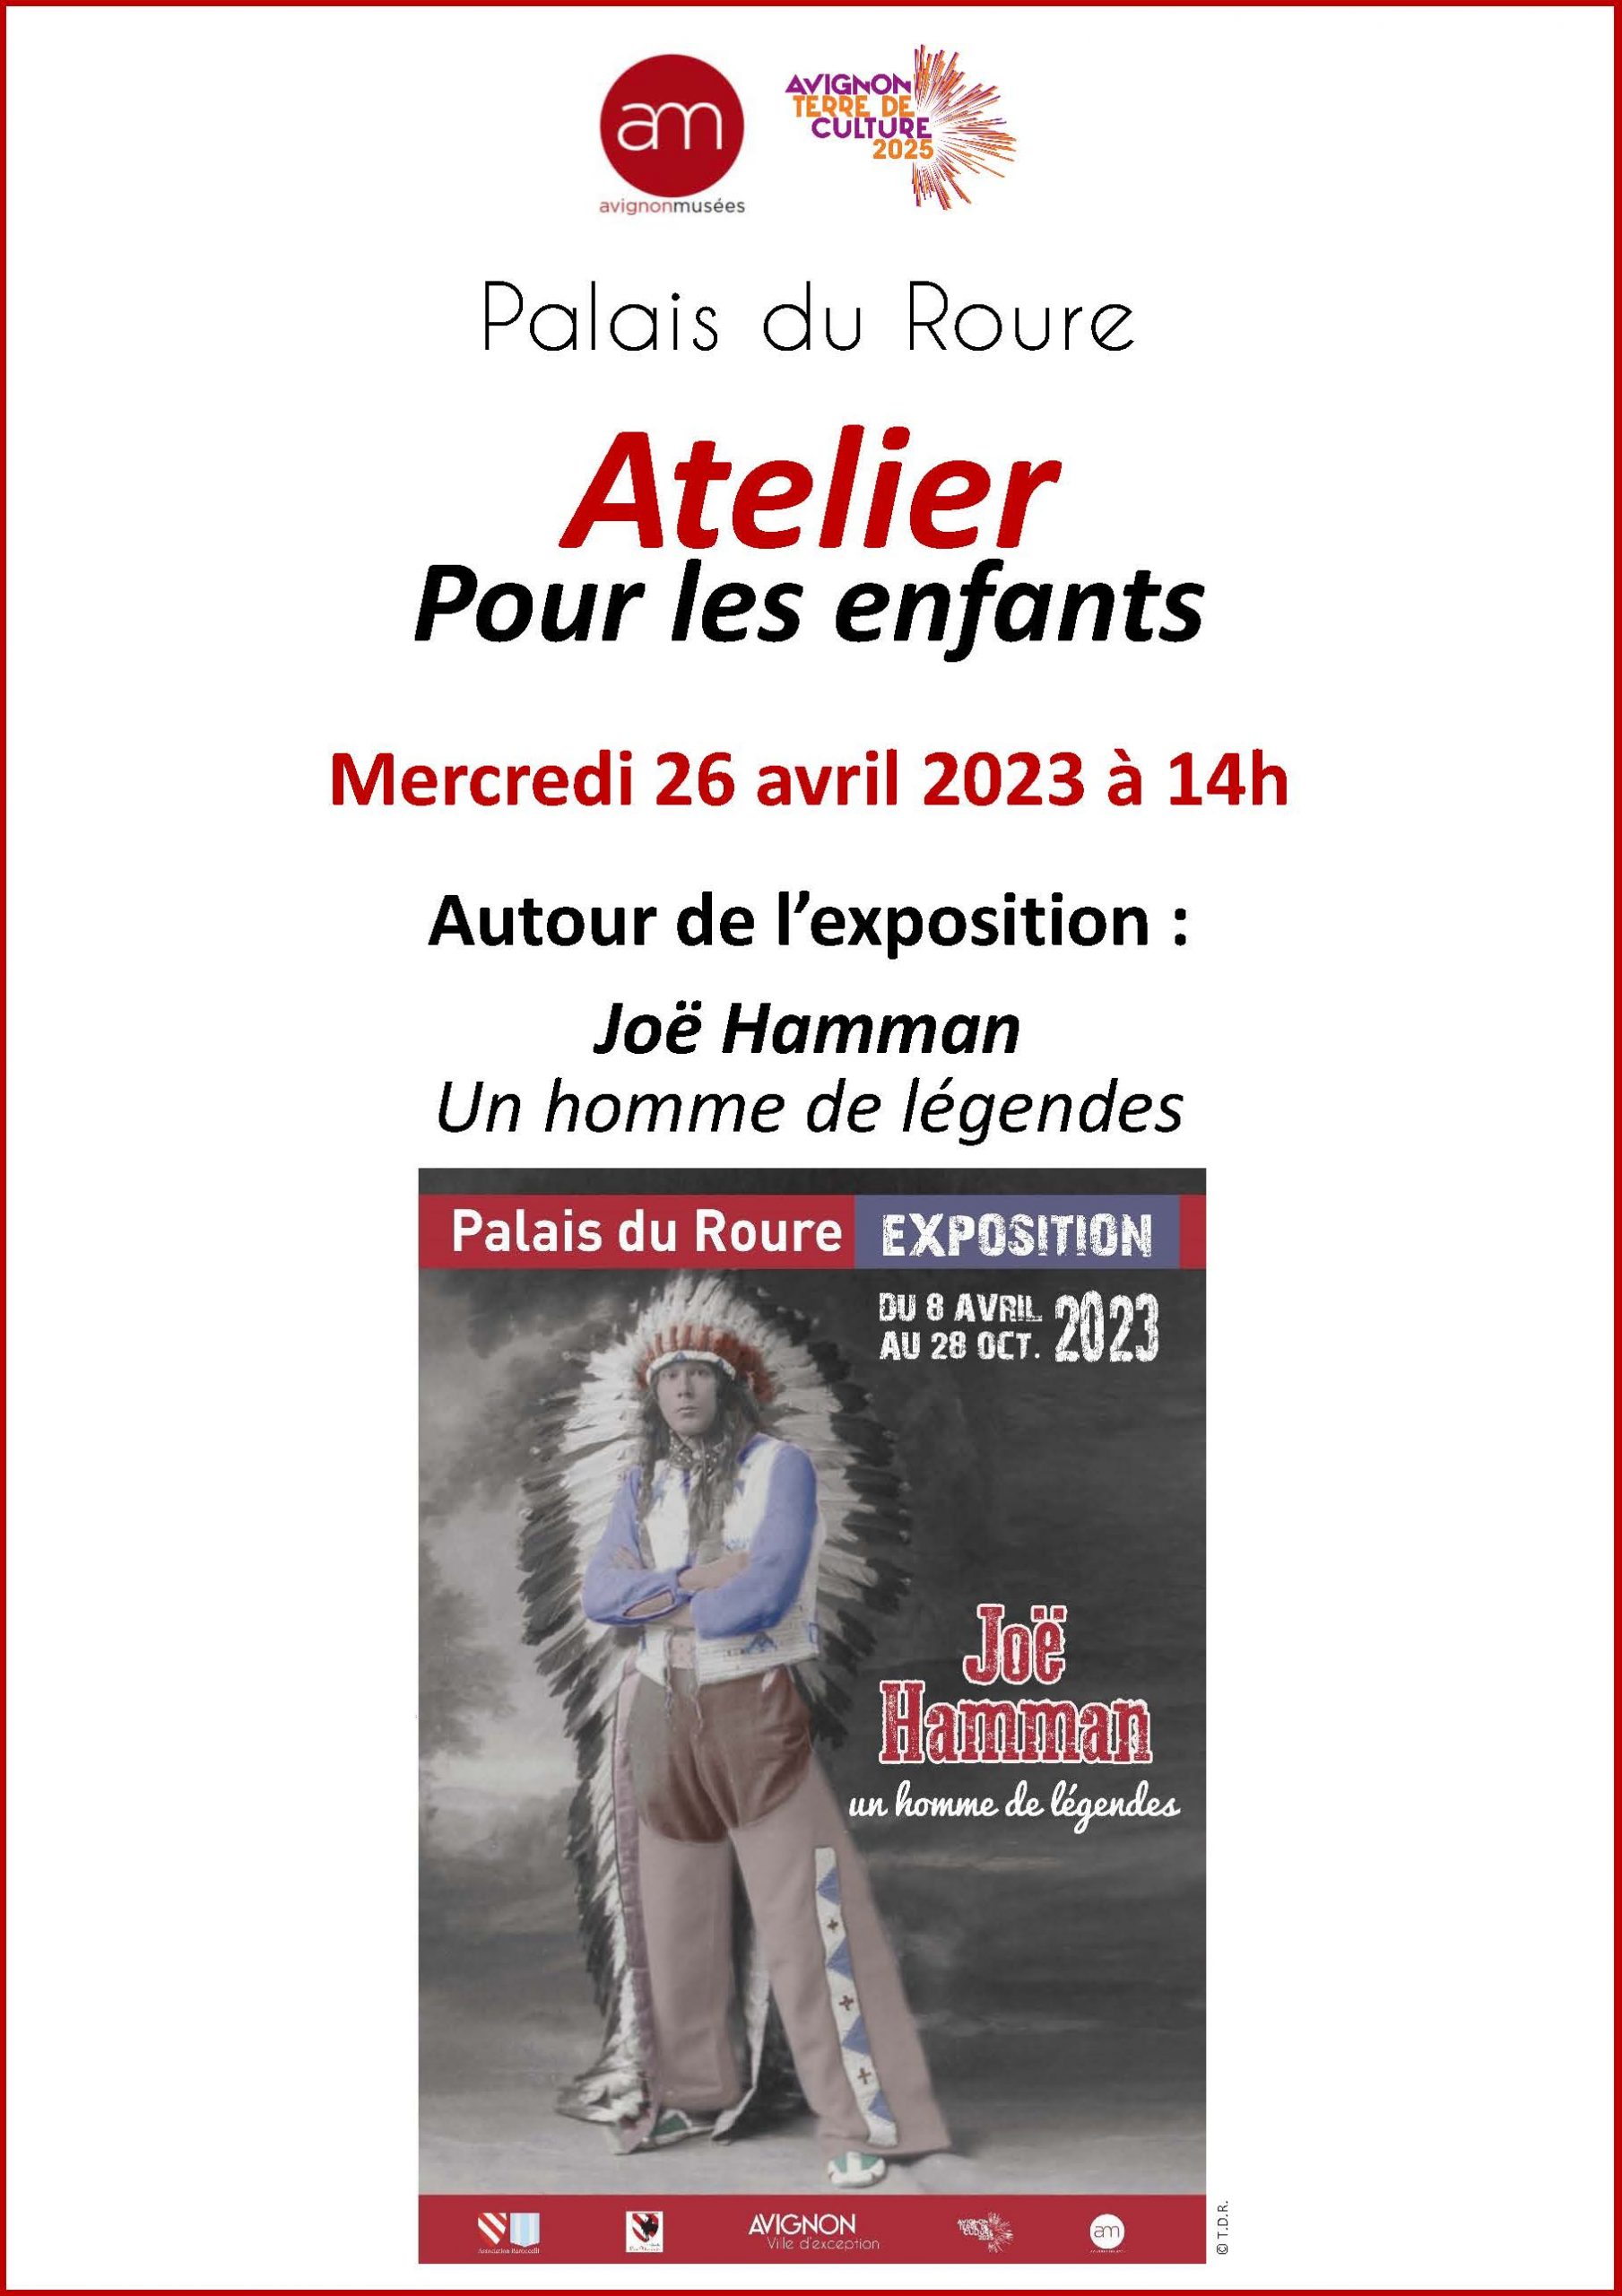 atelier Palais du Roure Avignon avril 2023